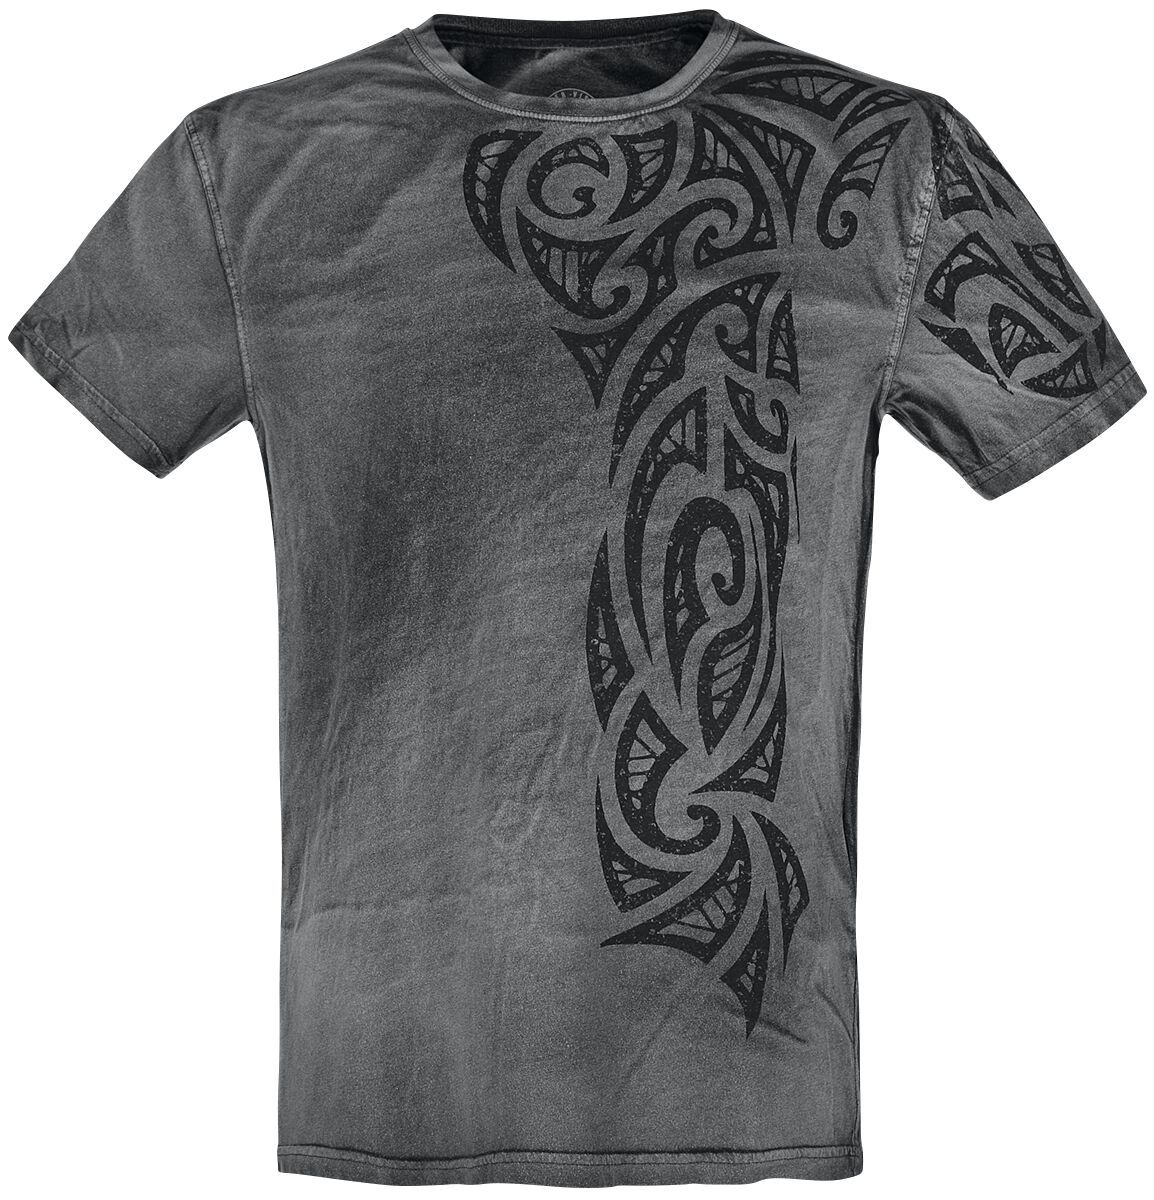 Outer Vision Gothic Tattoo T-Shirt grau in 4XL